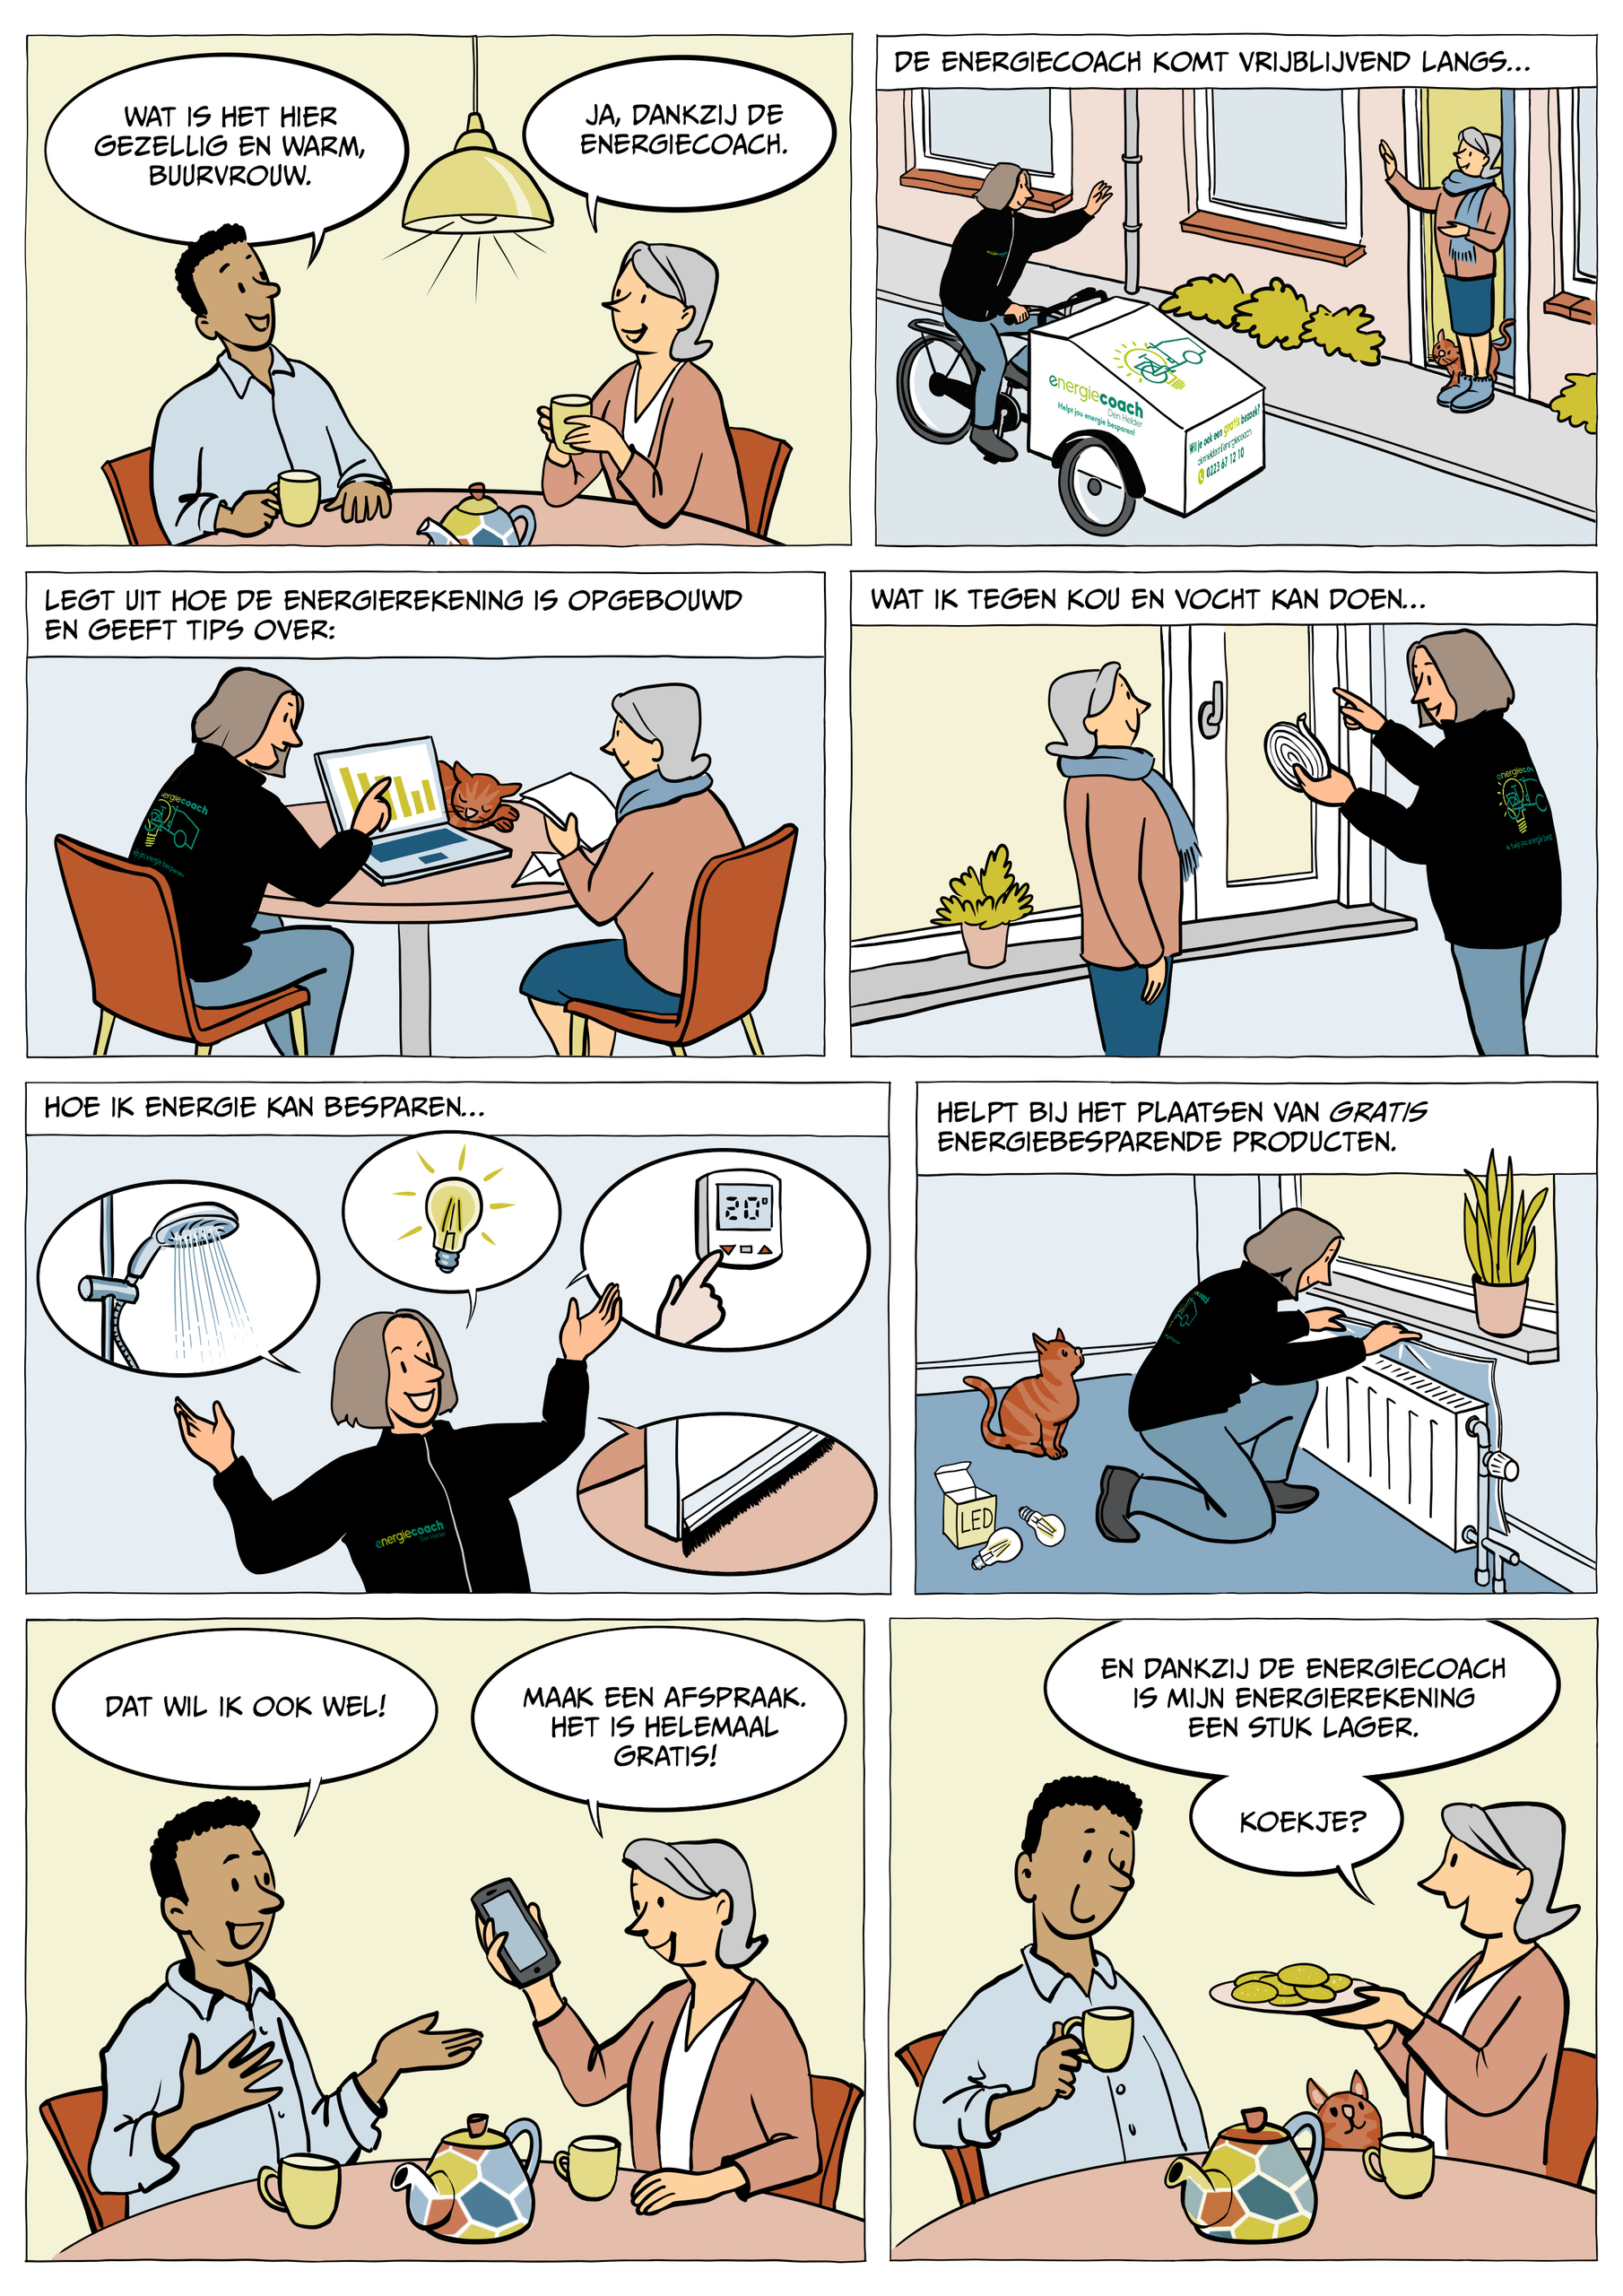 Cartoon: Twee personen praten aan keukentafel over de energiecoach